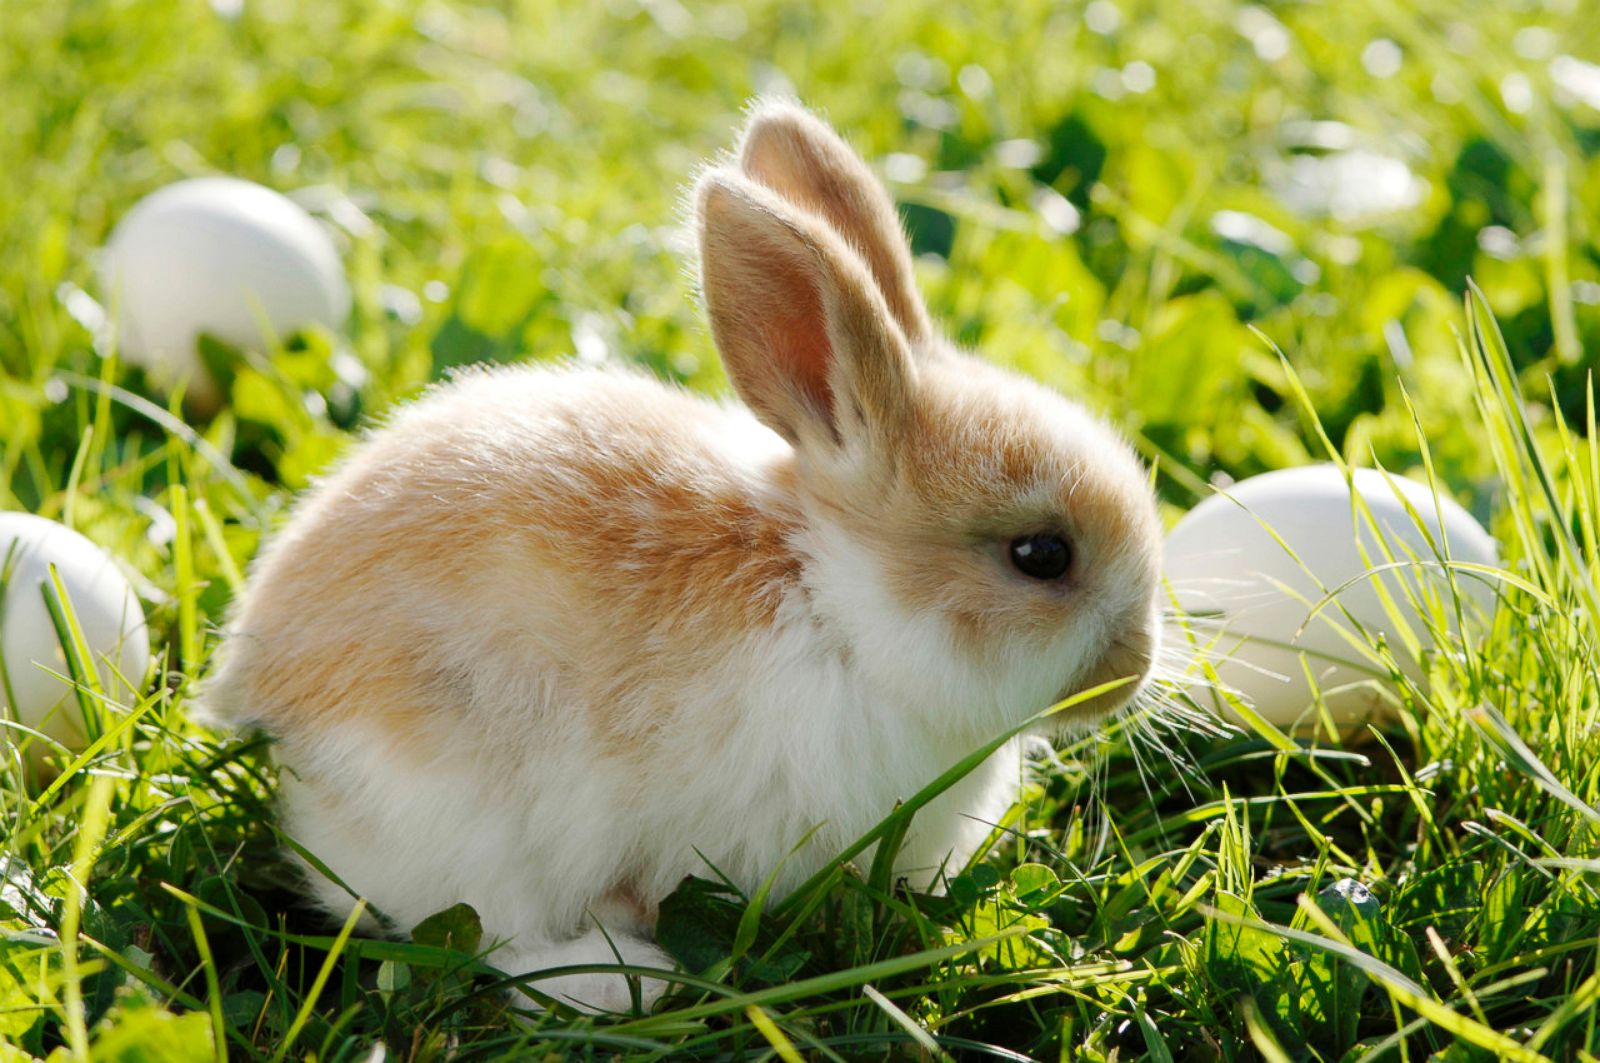 Cutest Easter Bunnies Photos - ABC News